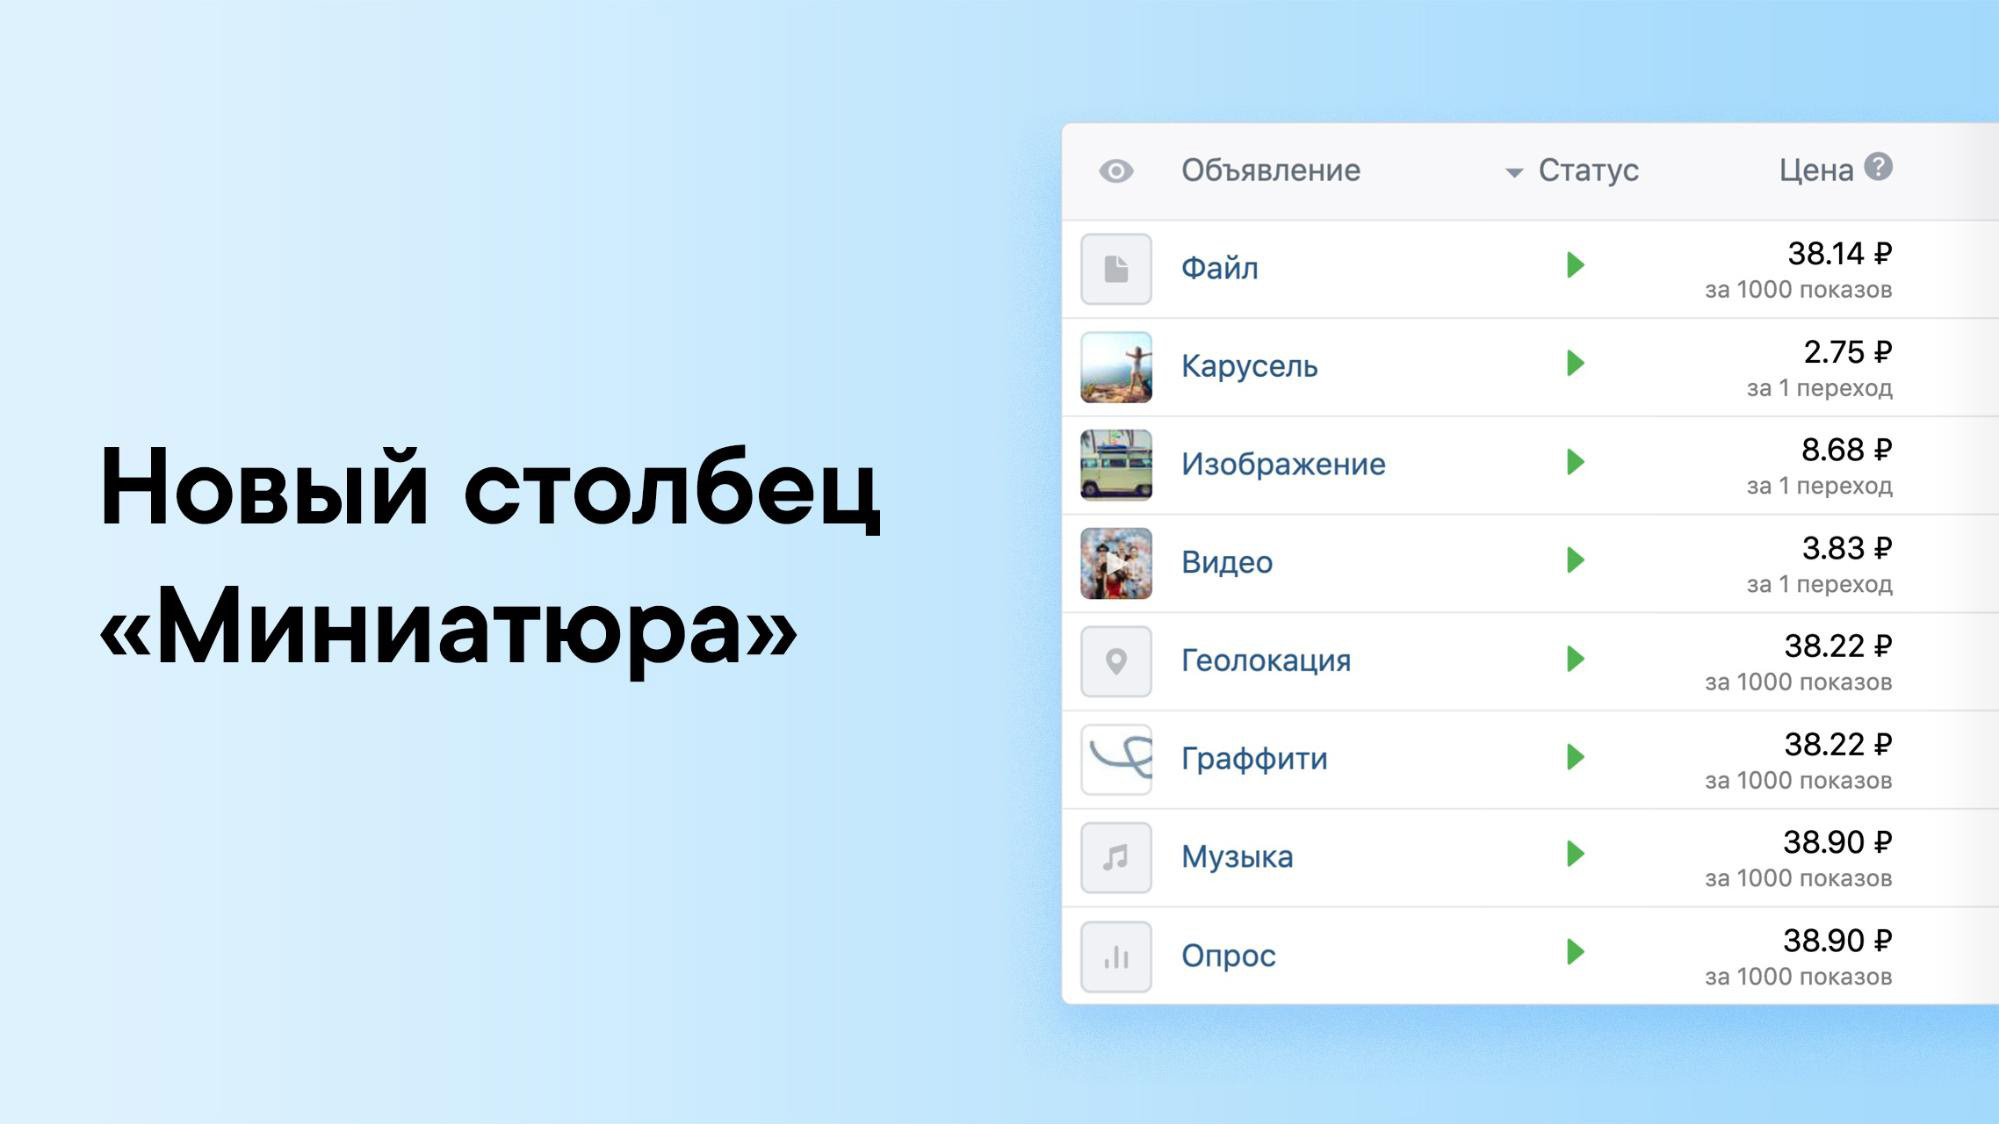 Предпросмотр объявлений ВКонтакте в таблице рекламного кабинета 